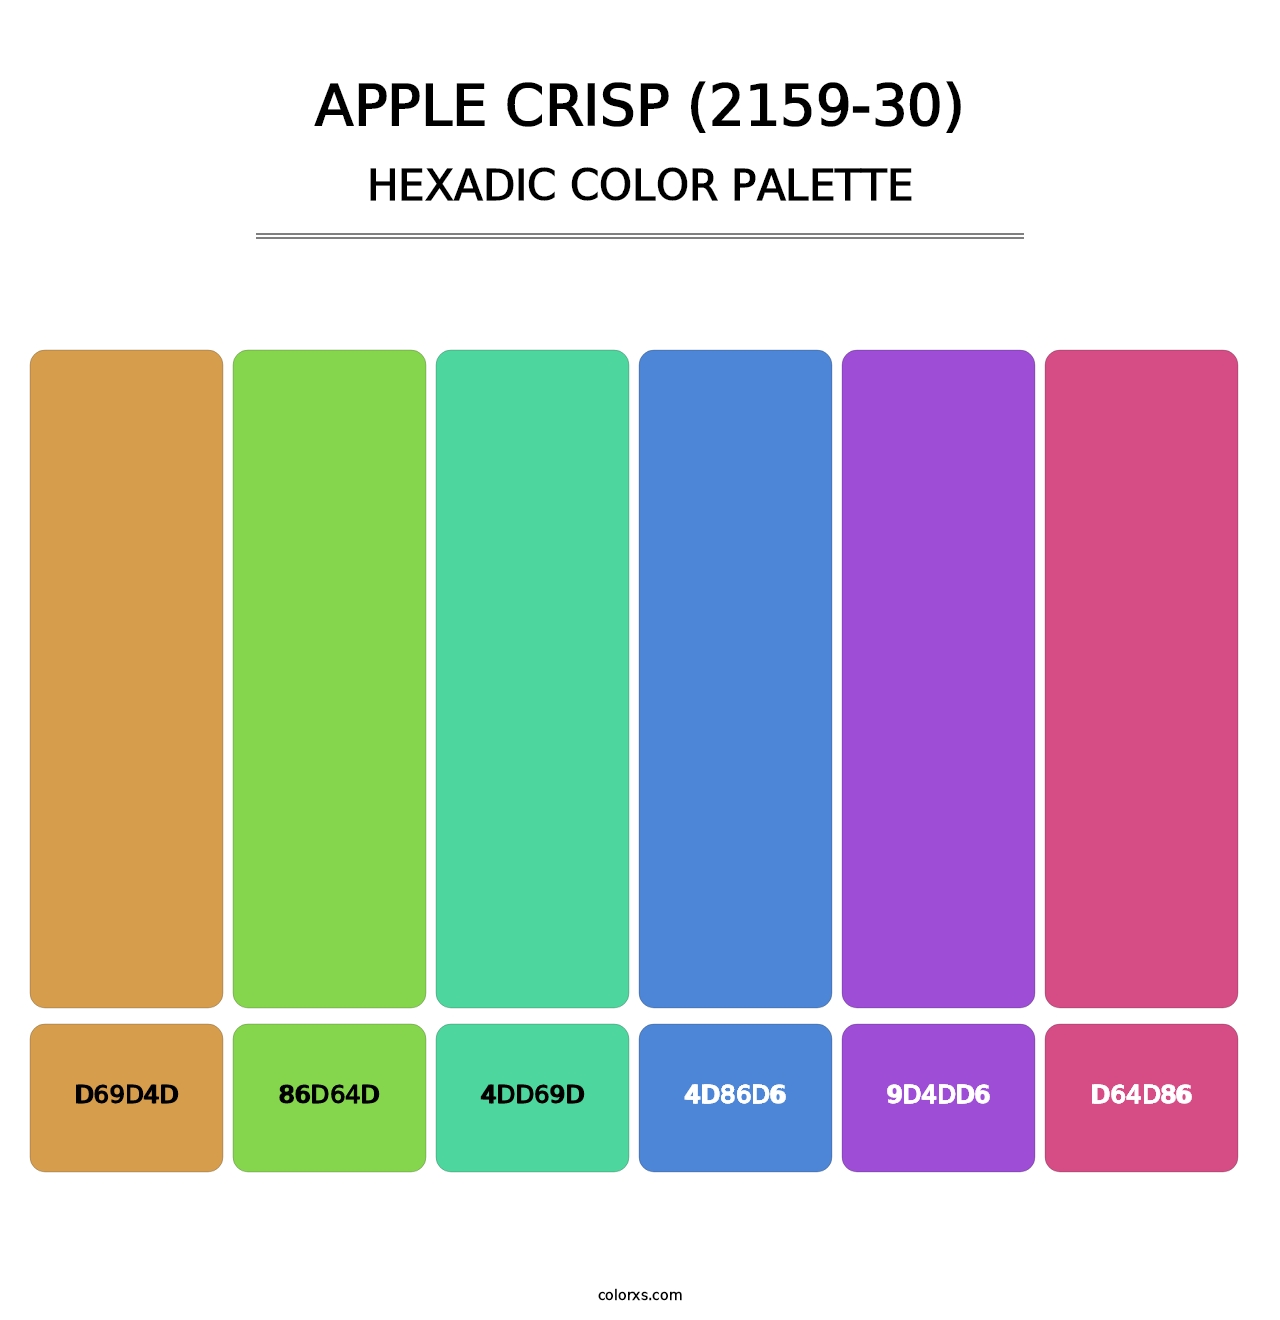 Apple Crisp (2159-30) - Hexadic Color Palette